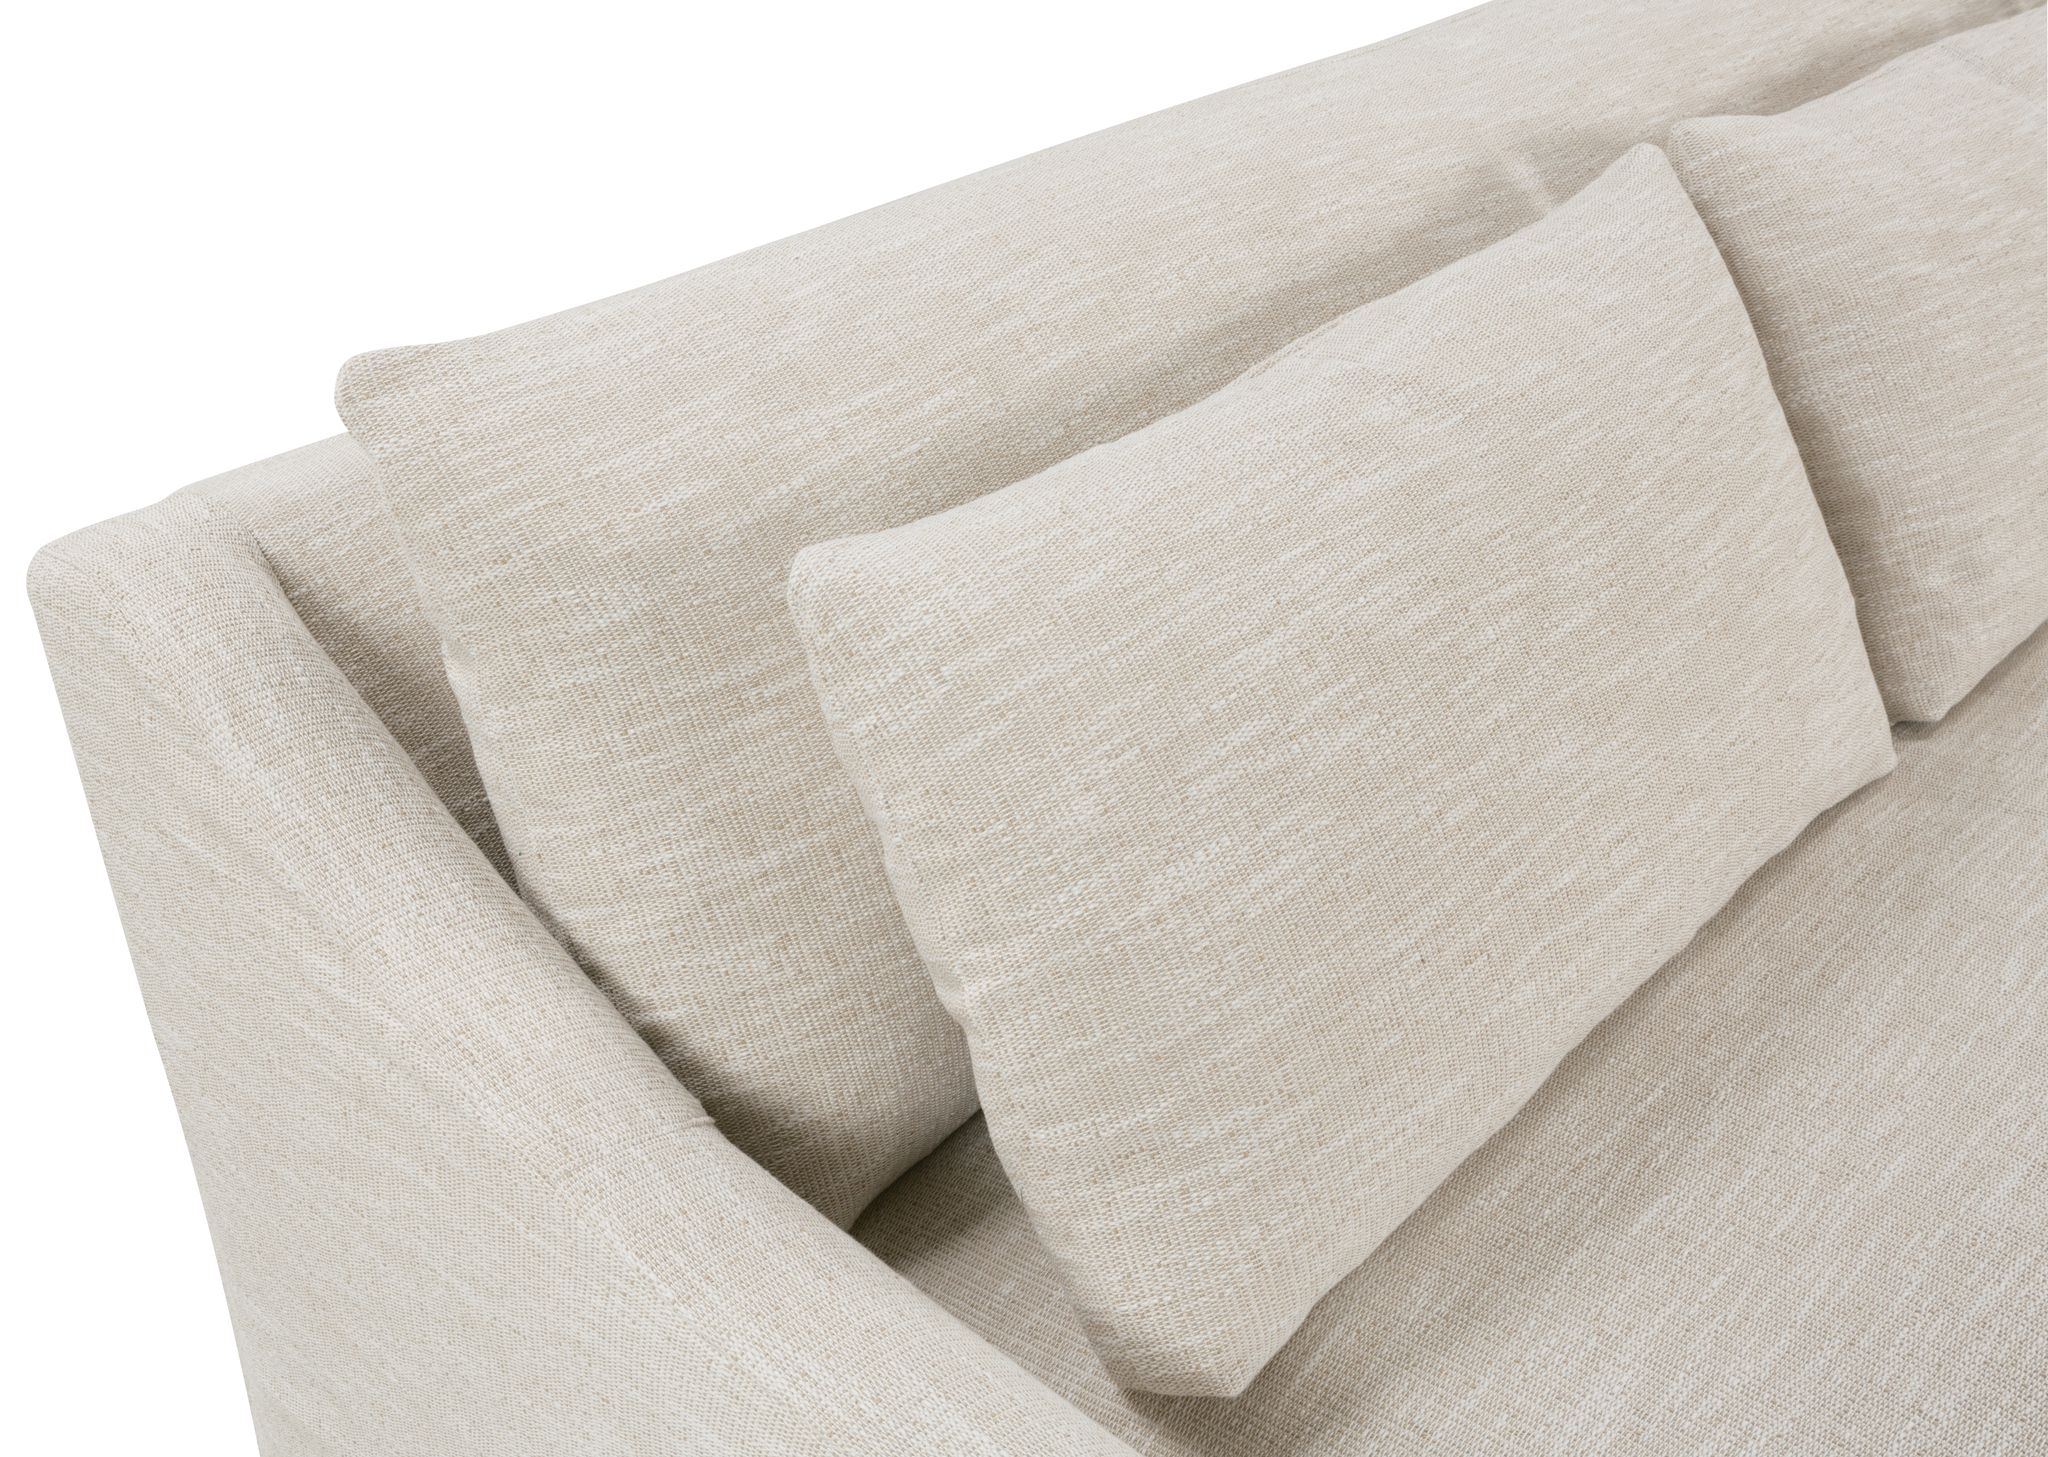 Fraser Slipcover Sofa, Bench Cushion, White, 95" - Image 6